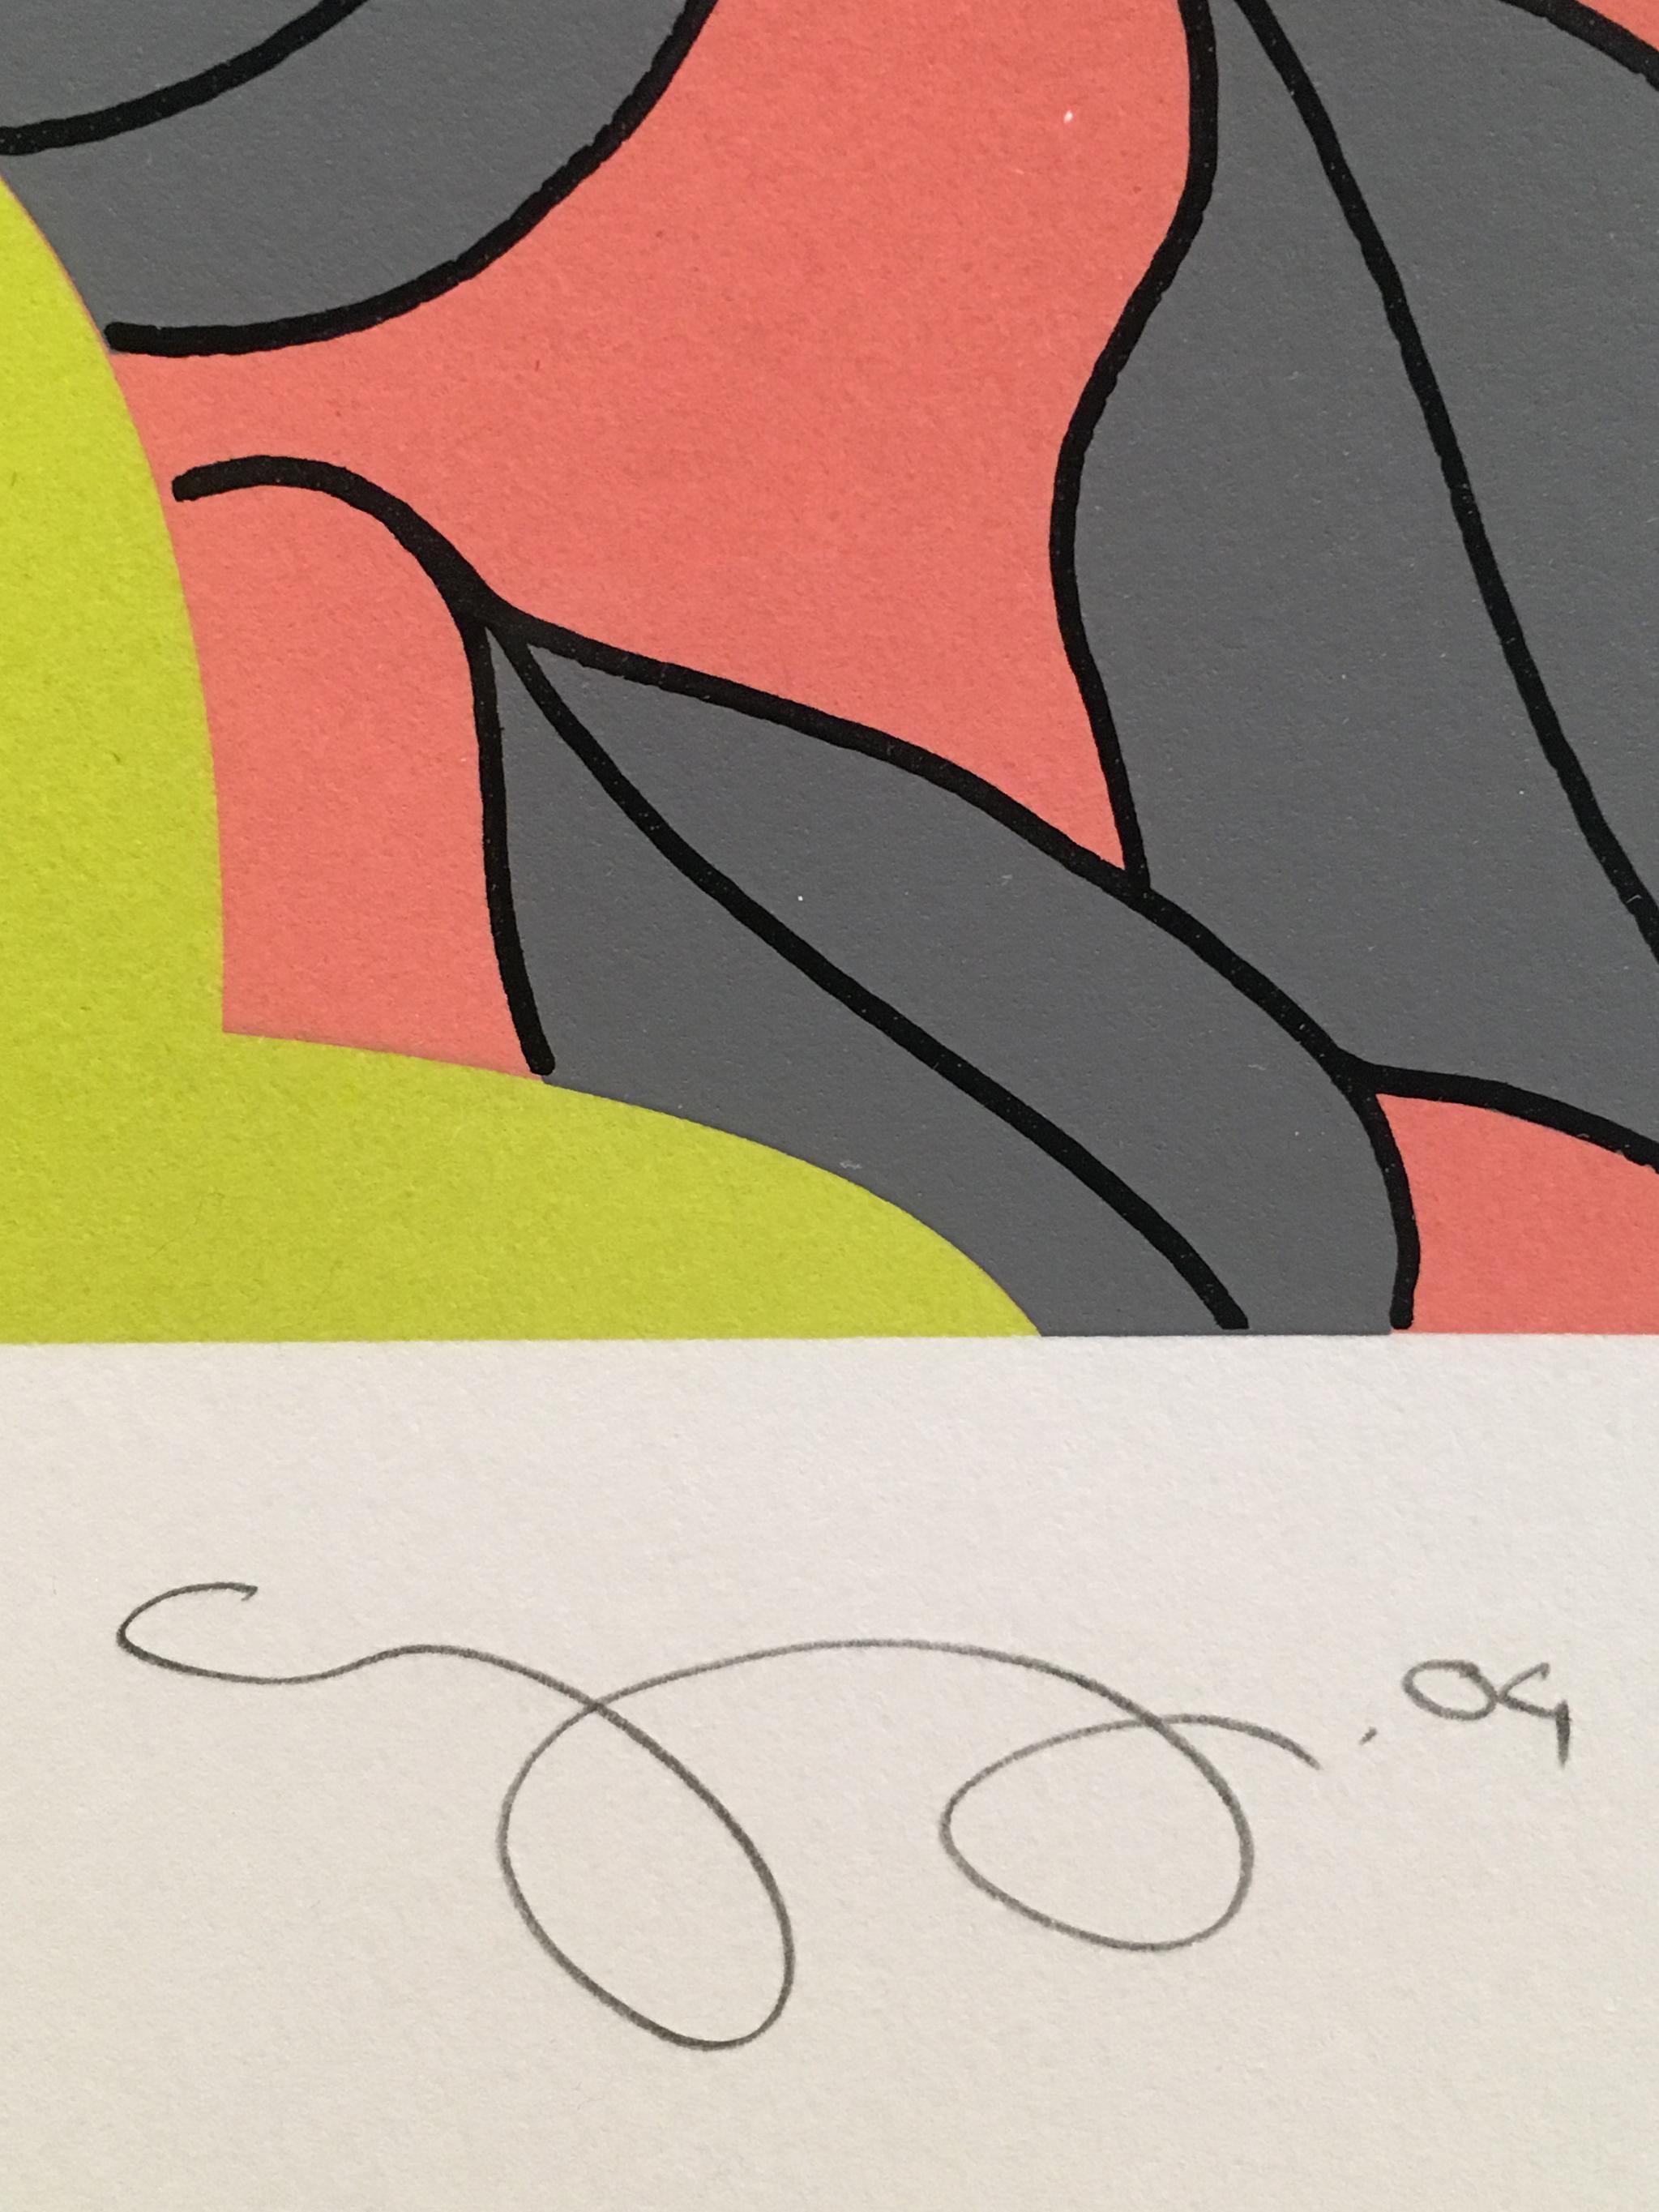 Gary Hume
Graue Blätter
2004
Siebdruck in 4 Farben mit einer Lasur, gedruckt auf 400gsm Somerset Tub
Blatt: 28 x 23 Zoll; 71 x 59 cm
Rahmen: 30 3/8 x 25 1/2 Zoll; 77 x 65 cm
Auflage von 250 Stück
Signiert, betitelt, datiert und nummeriert in Graphit